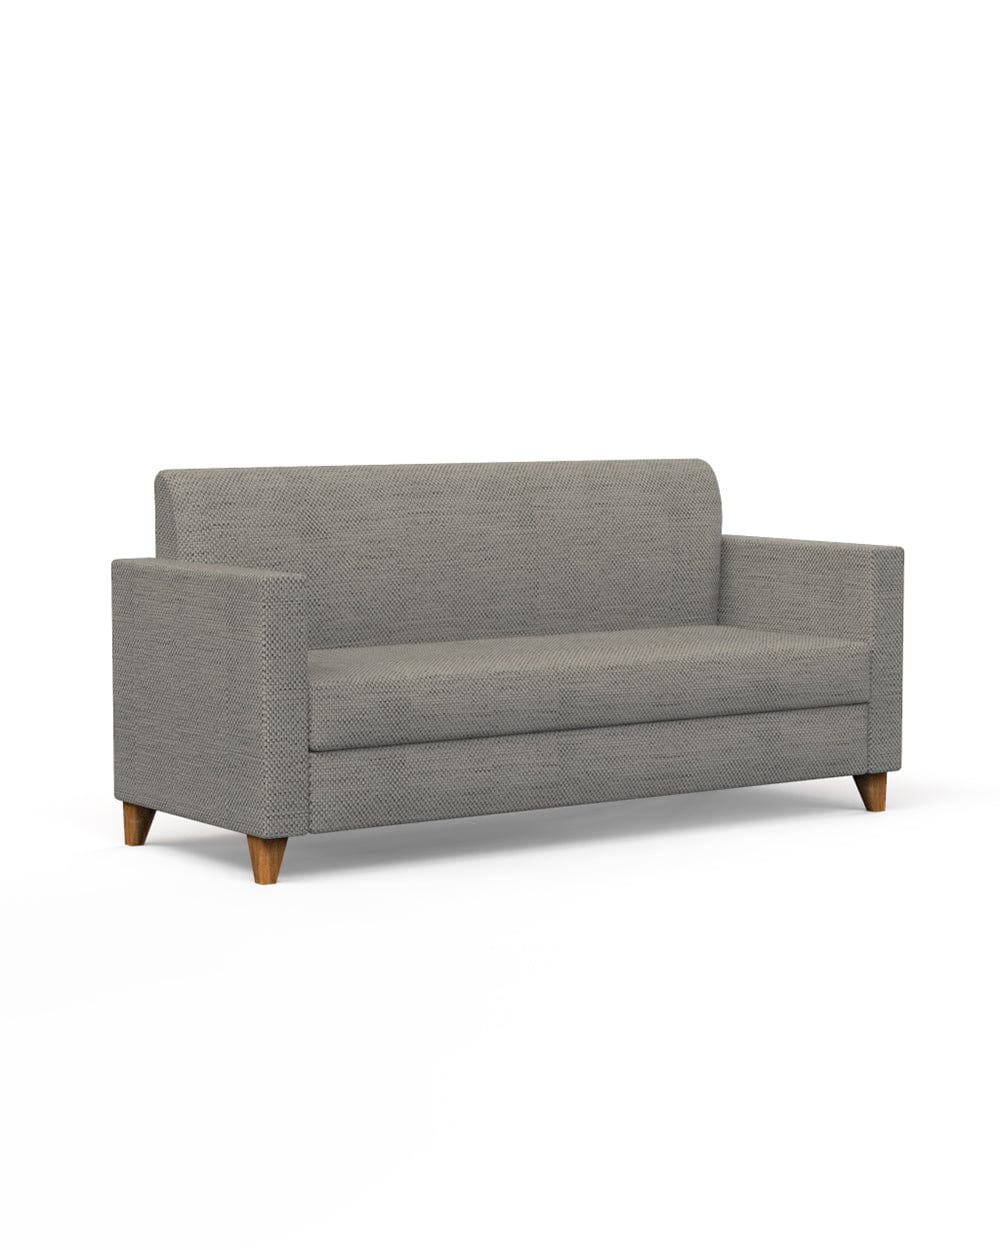 Chumbak Modern Couch-Bangalore Grey